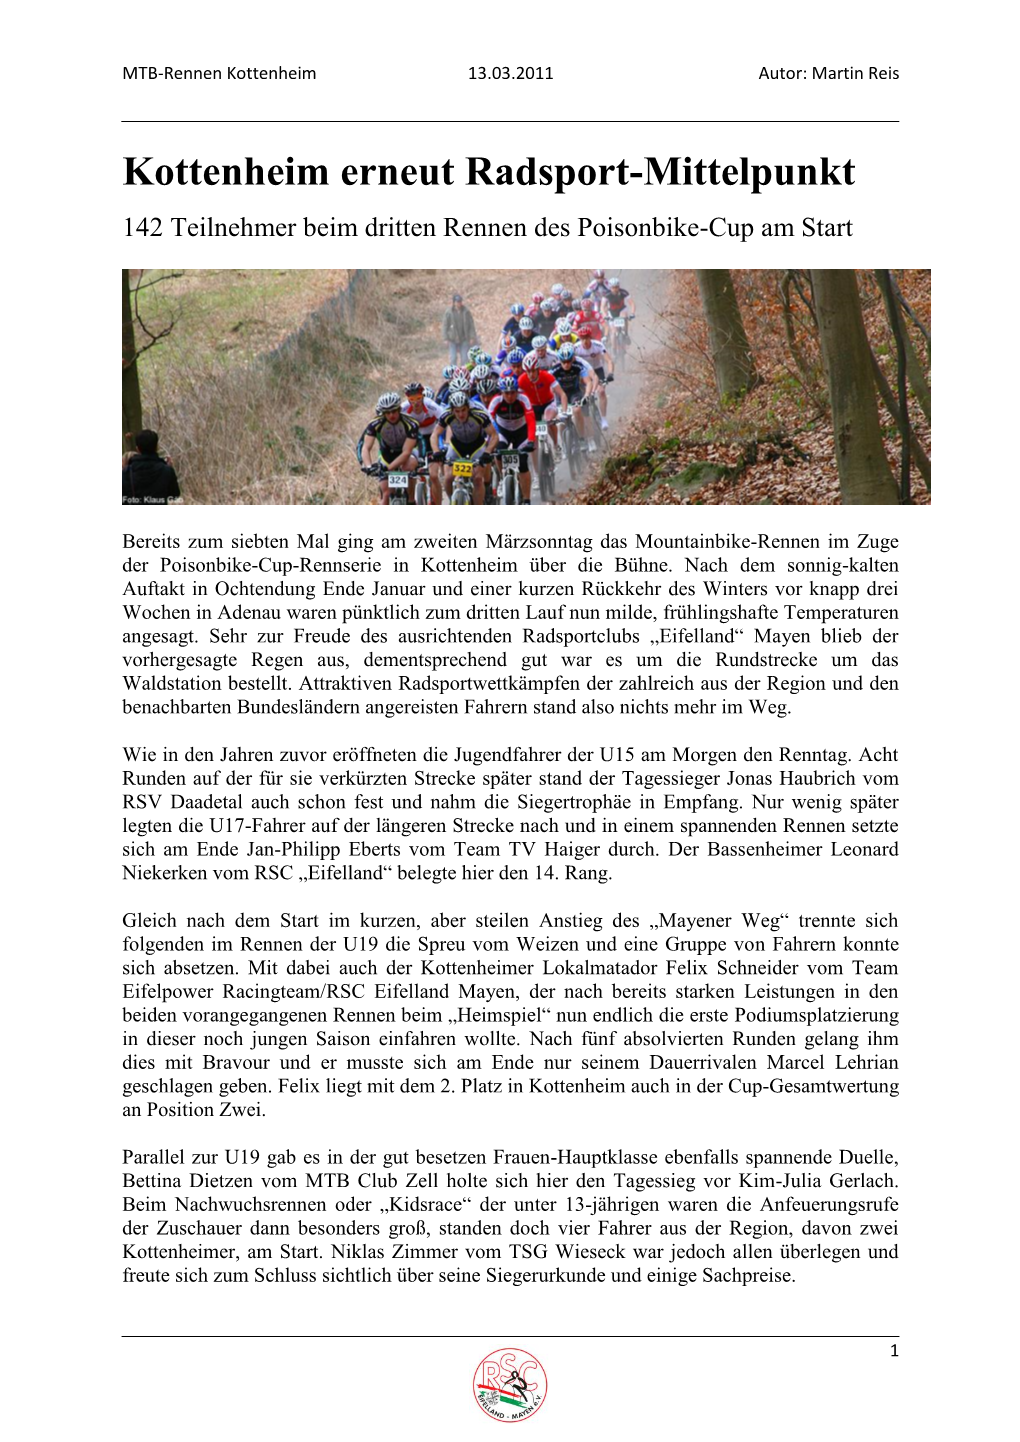 Kottenheim Erneut Radsport-Mittelpunkt 142 Teilnehmer Beim Dritten Rennen Des Poisonbike-Cup Am Start